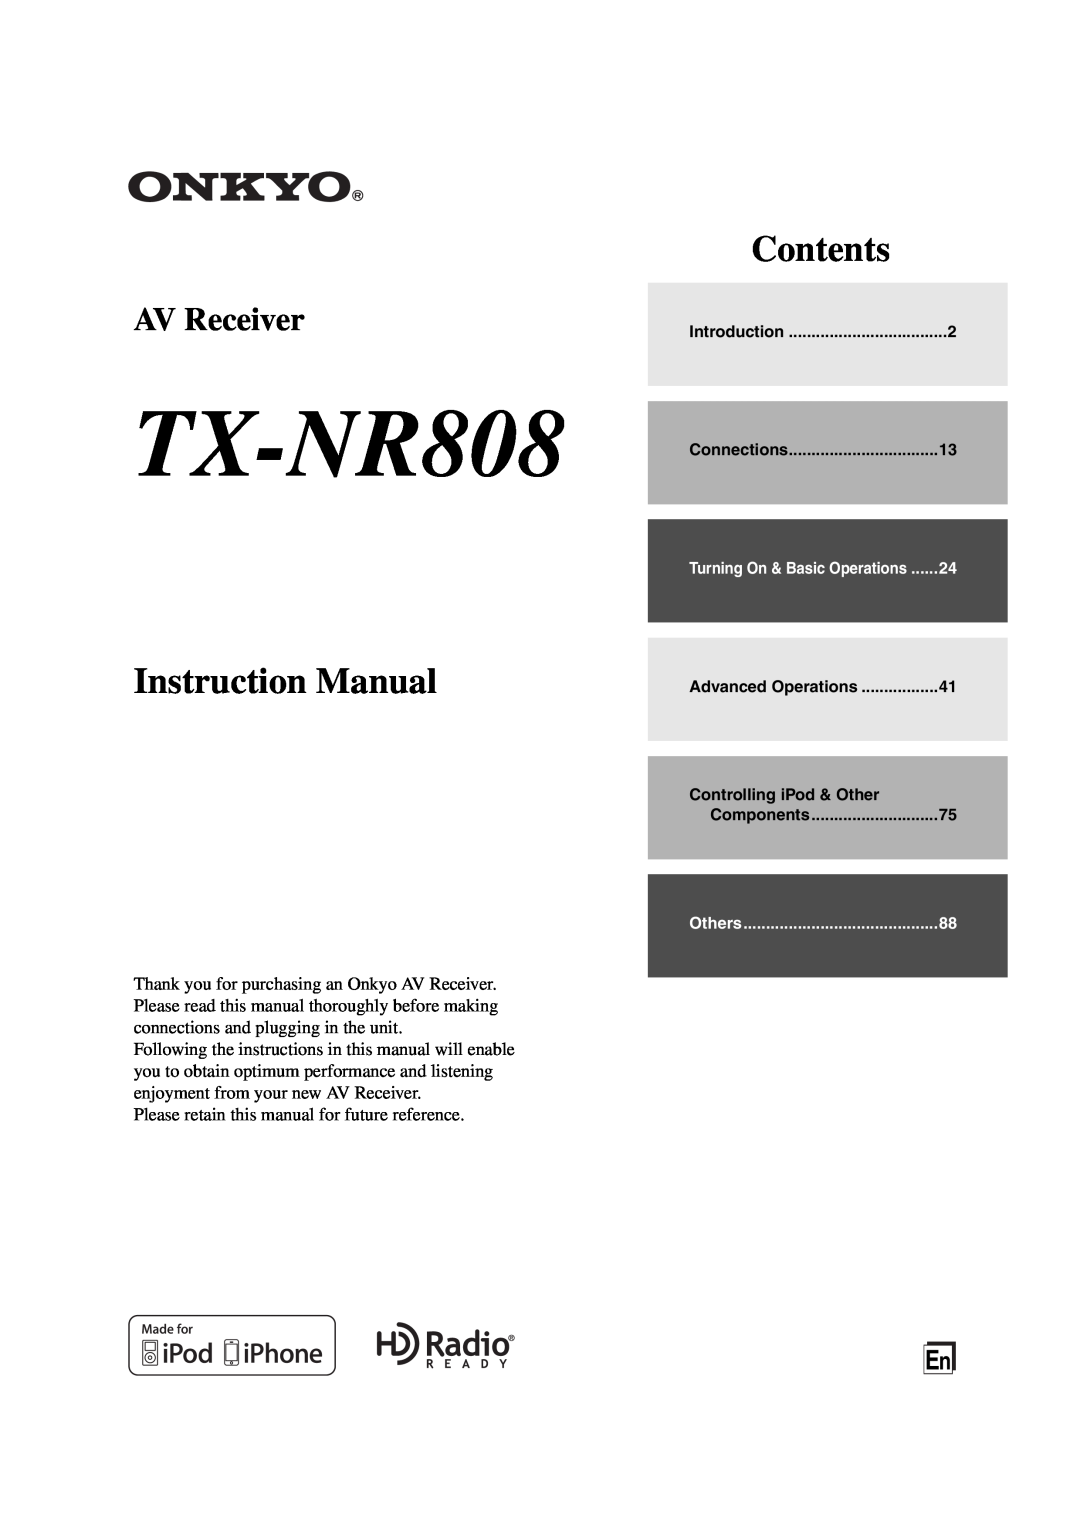 Onkyo TX-NR808 instruction manual Instruction Manual, Contents, AV Receiver 